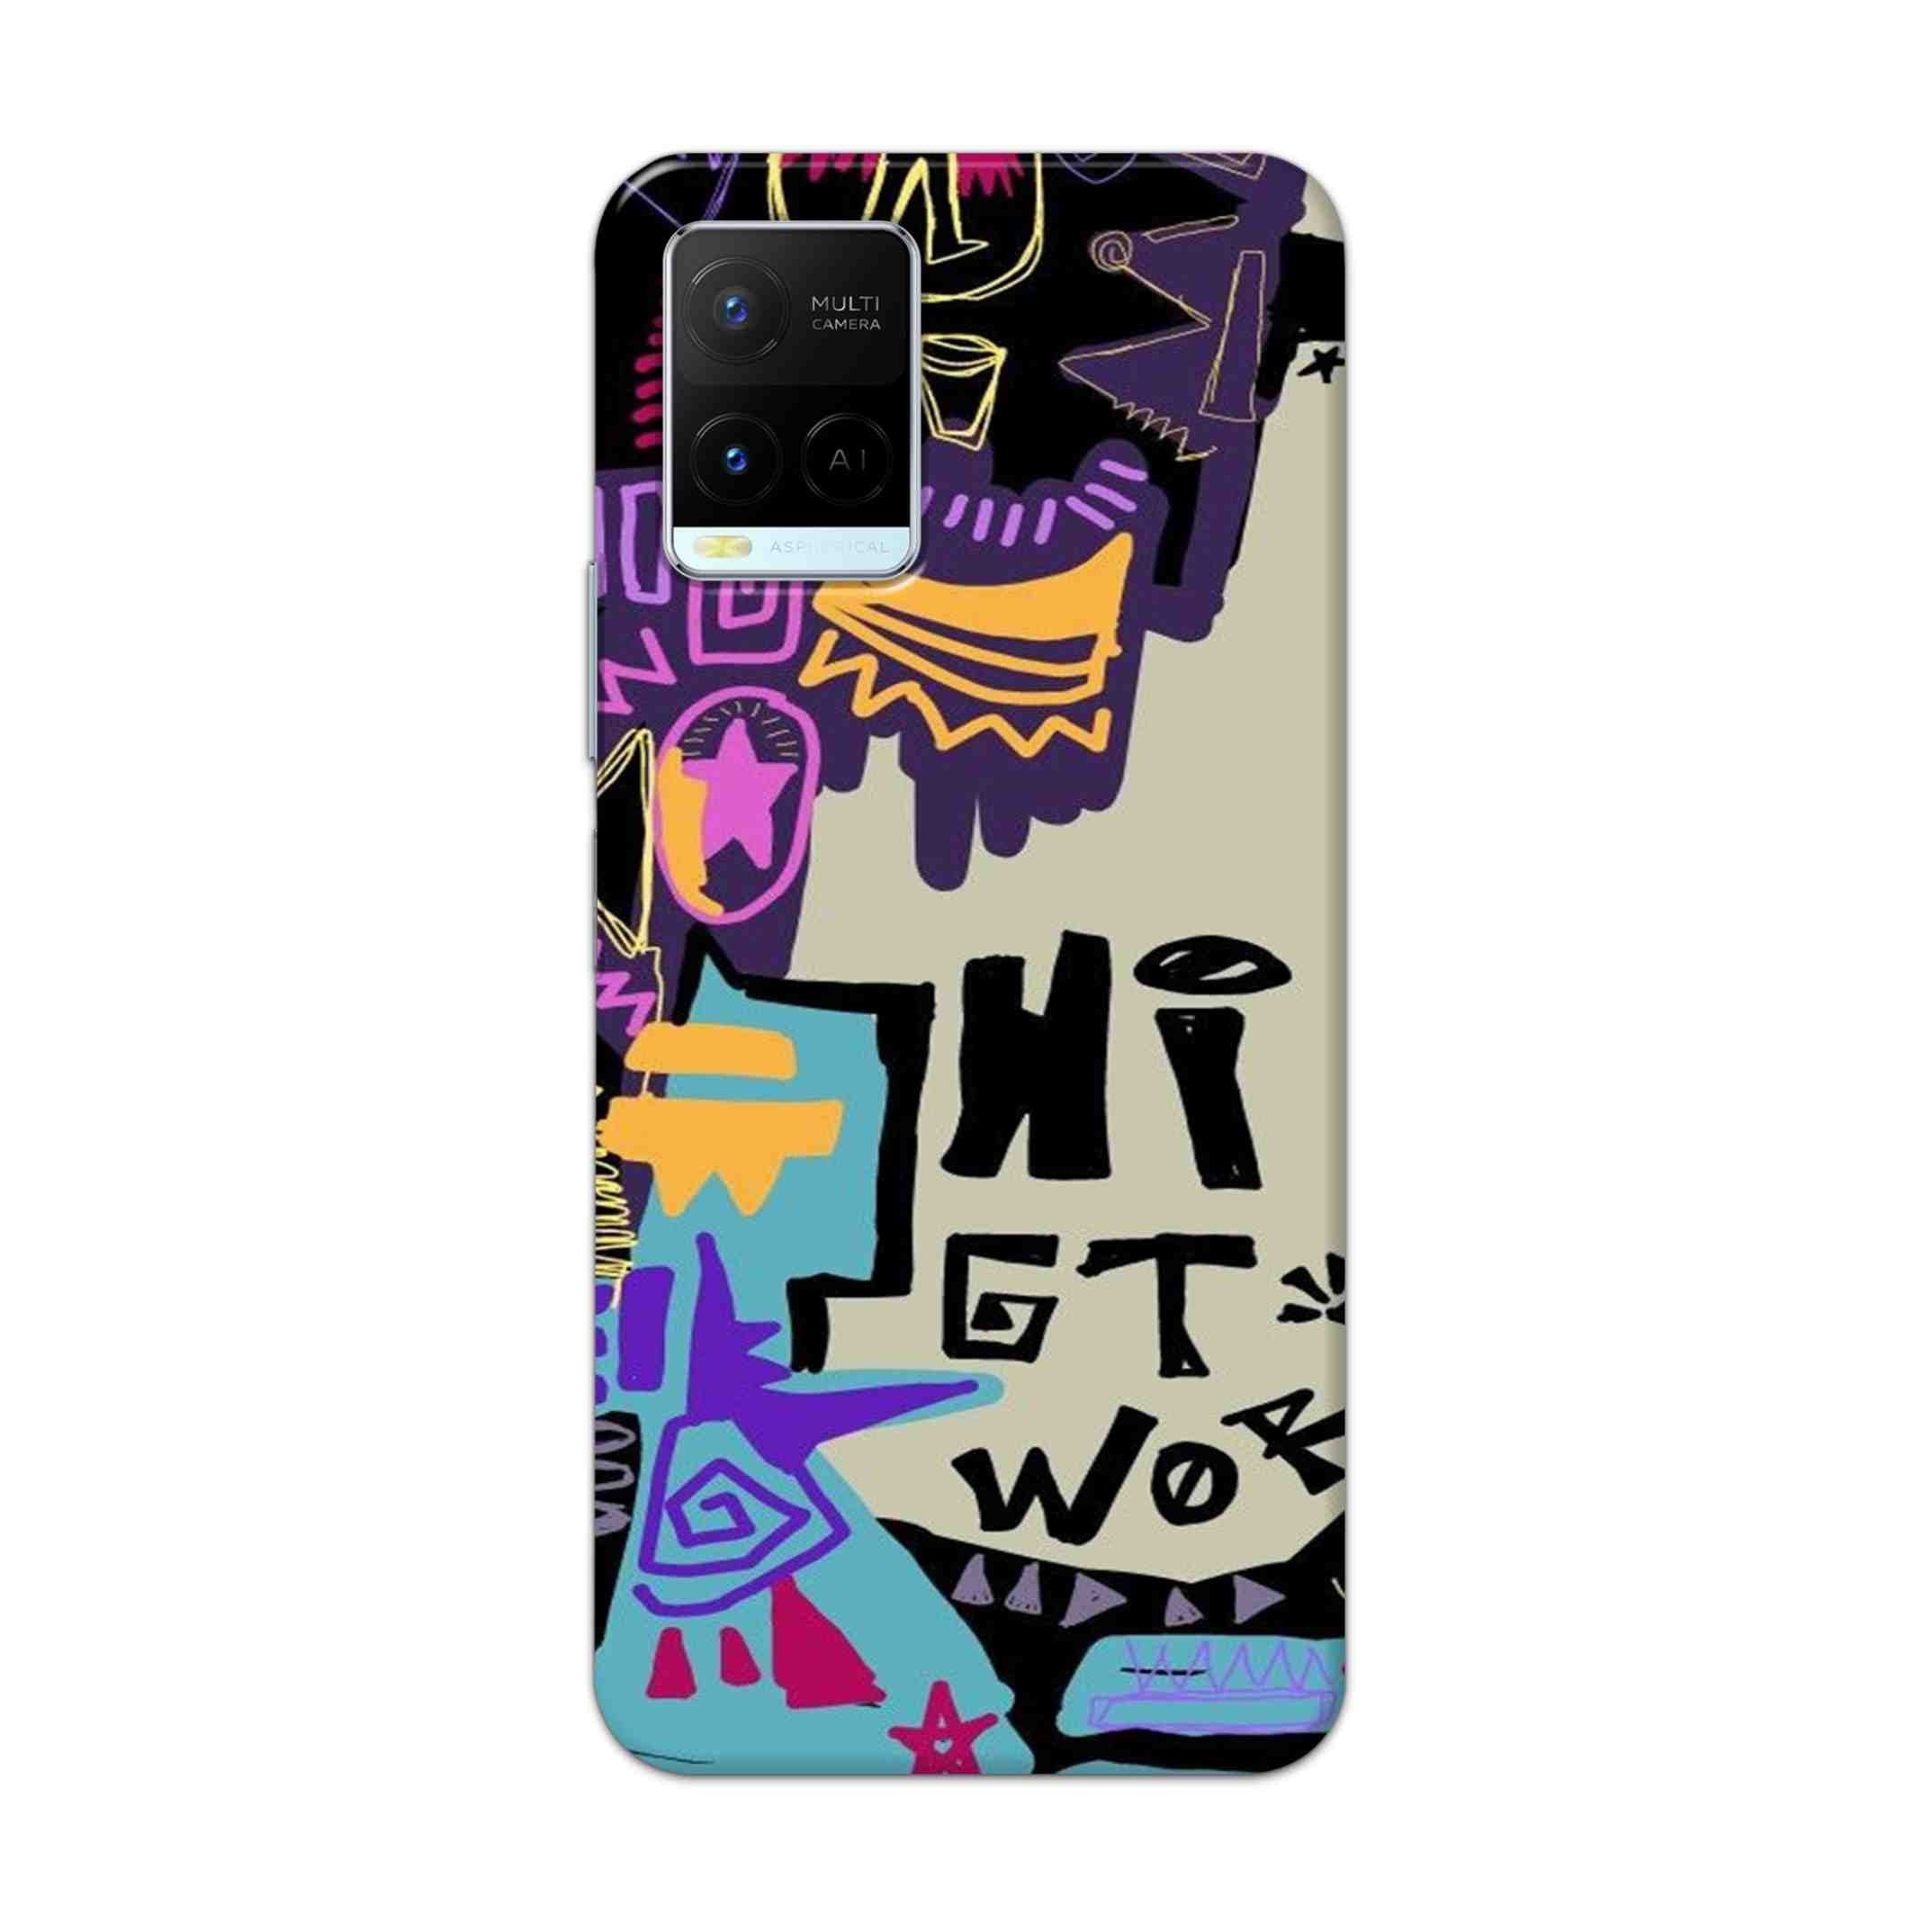 Buy Hi Gt World Hard Back Mobile Phone Case Cover For Vivo Y21 2021 Online